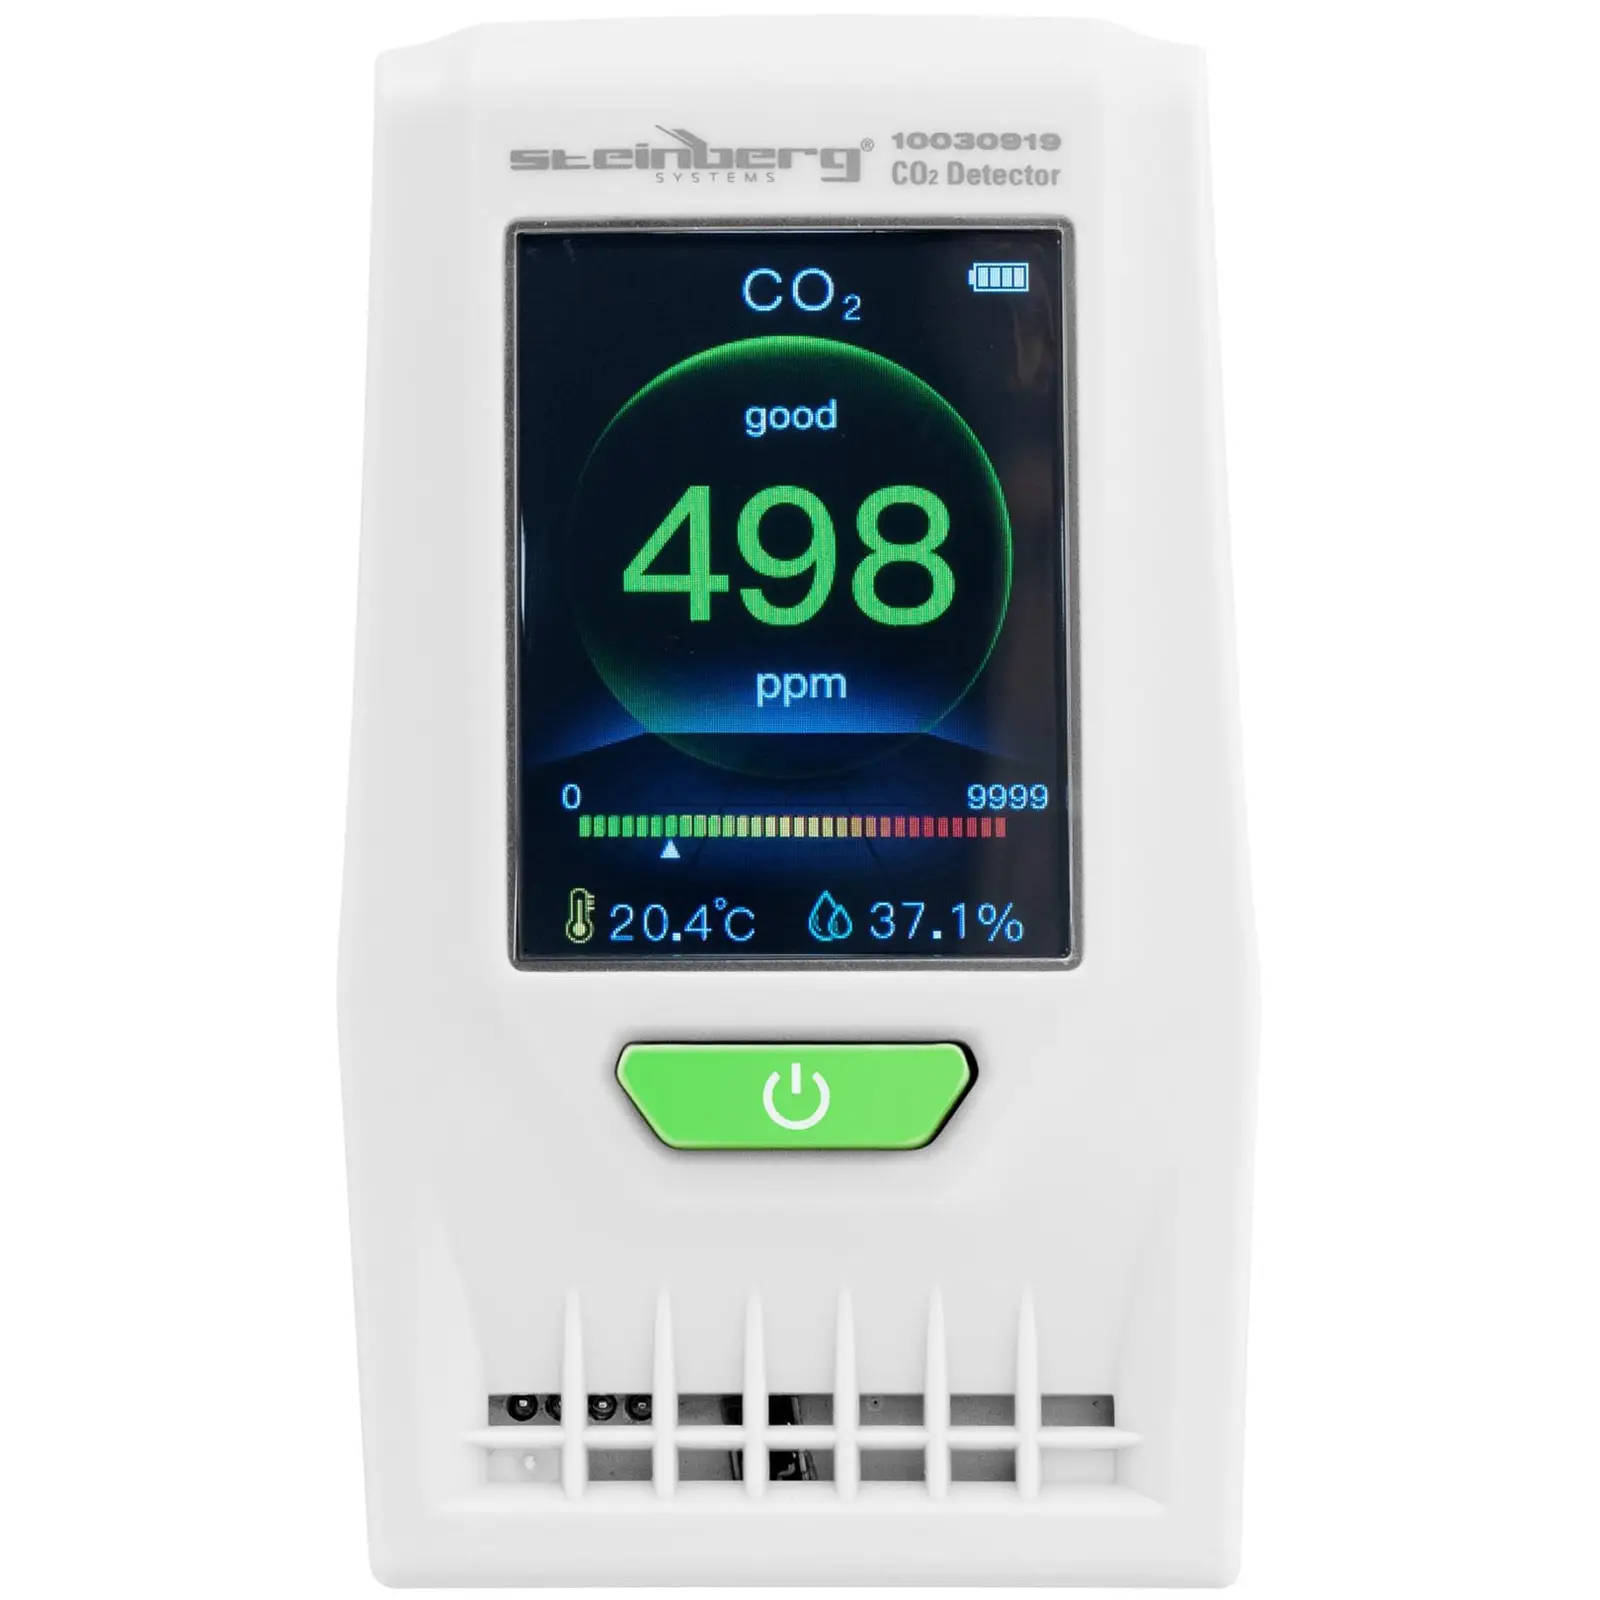 CO2 Messgerät - inkl. Temperatur, Luftfeuchtigkeit, Datum und Uhrzeit